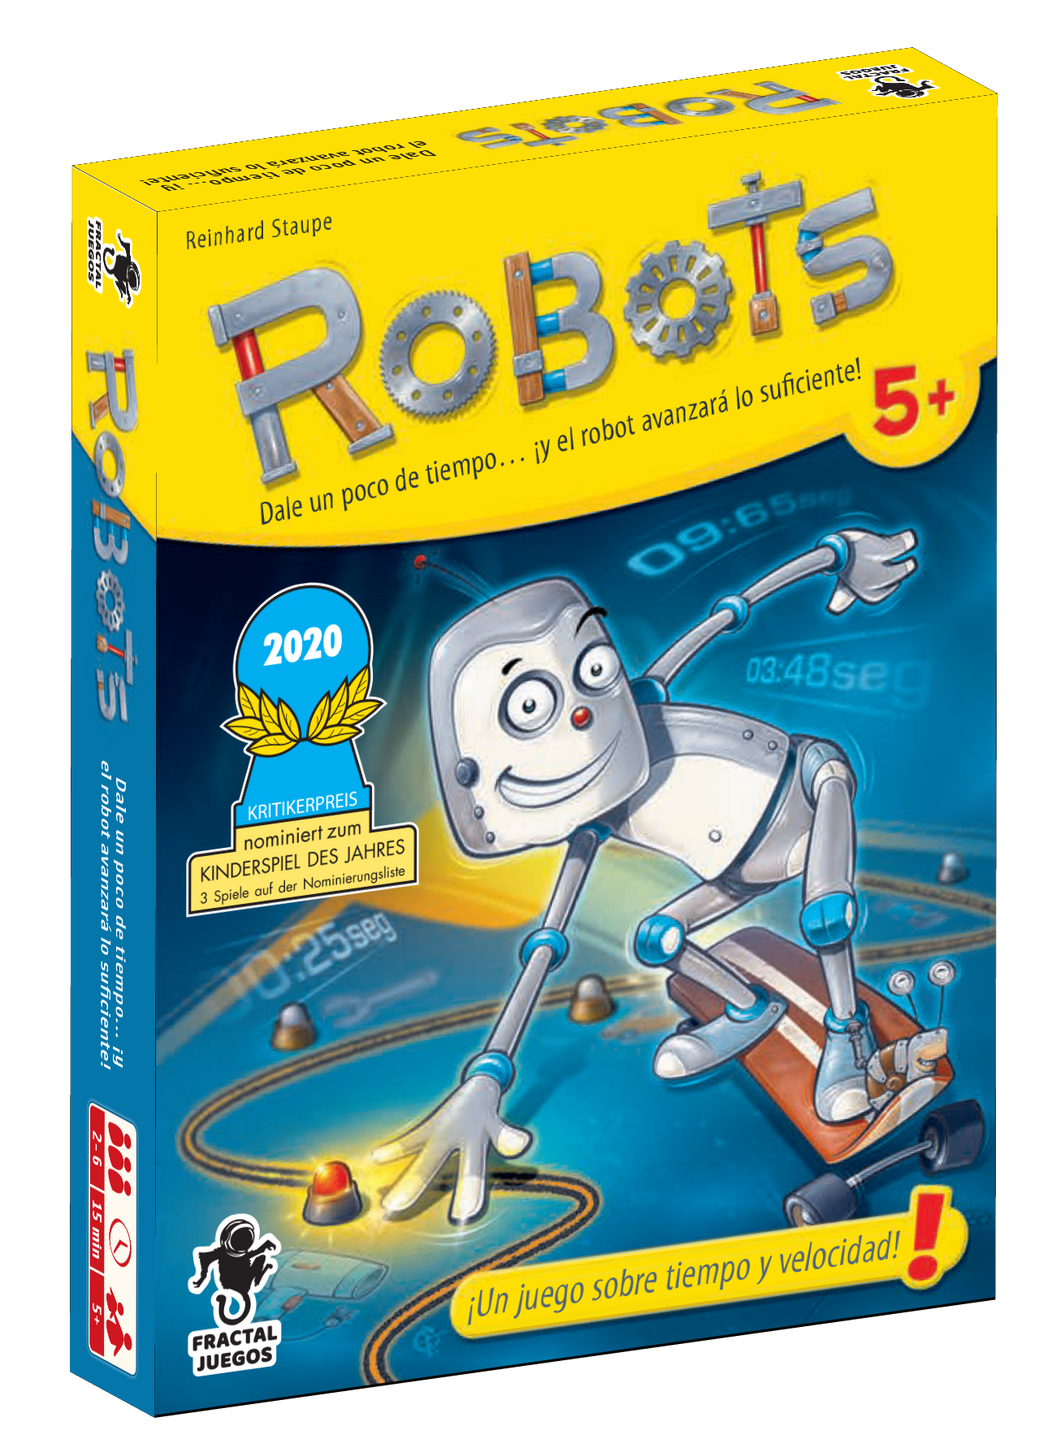 Robots el juego de cartas